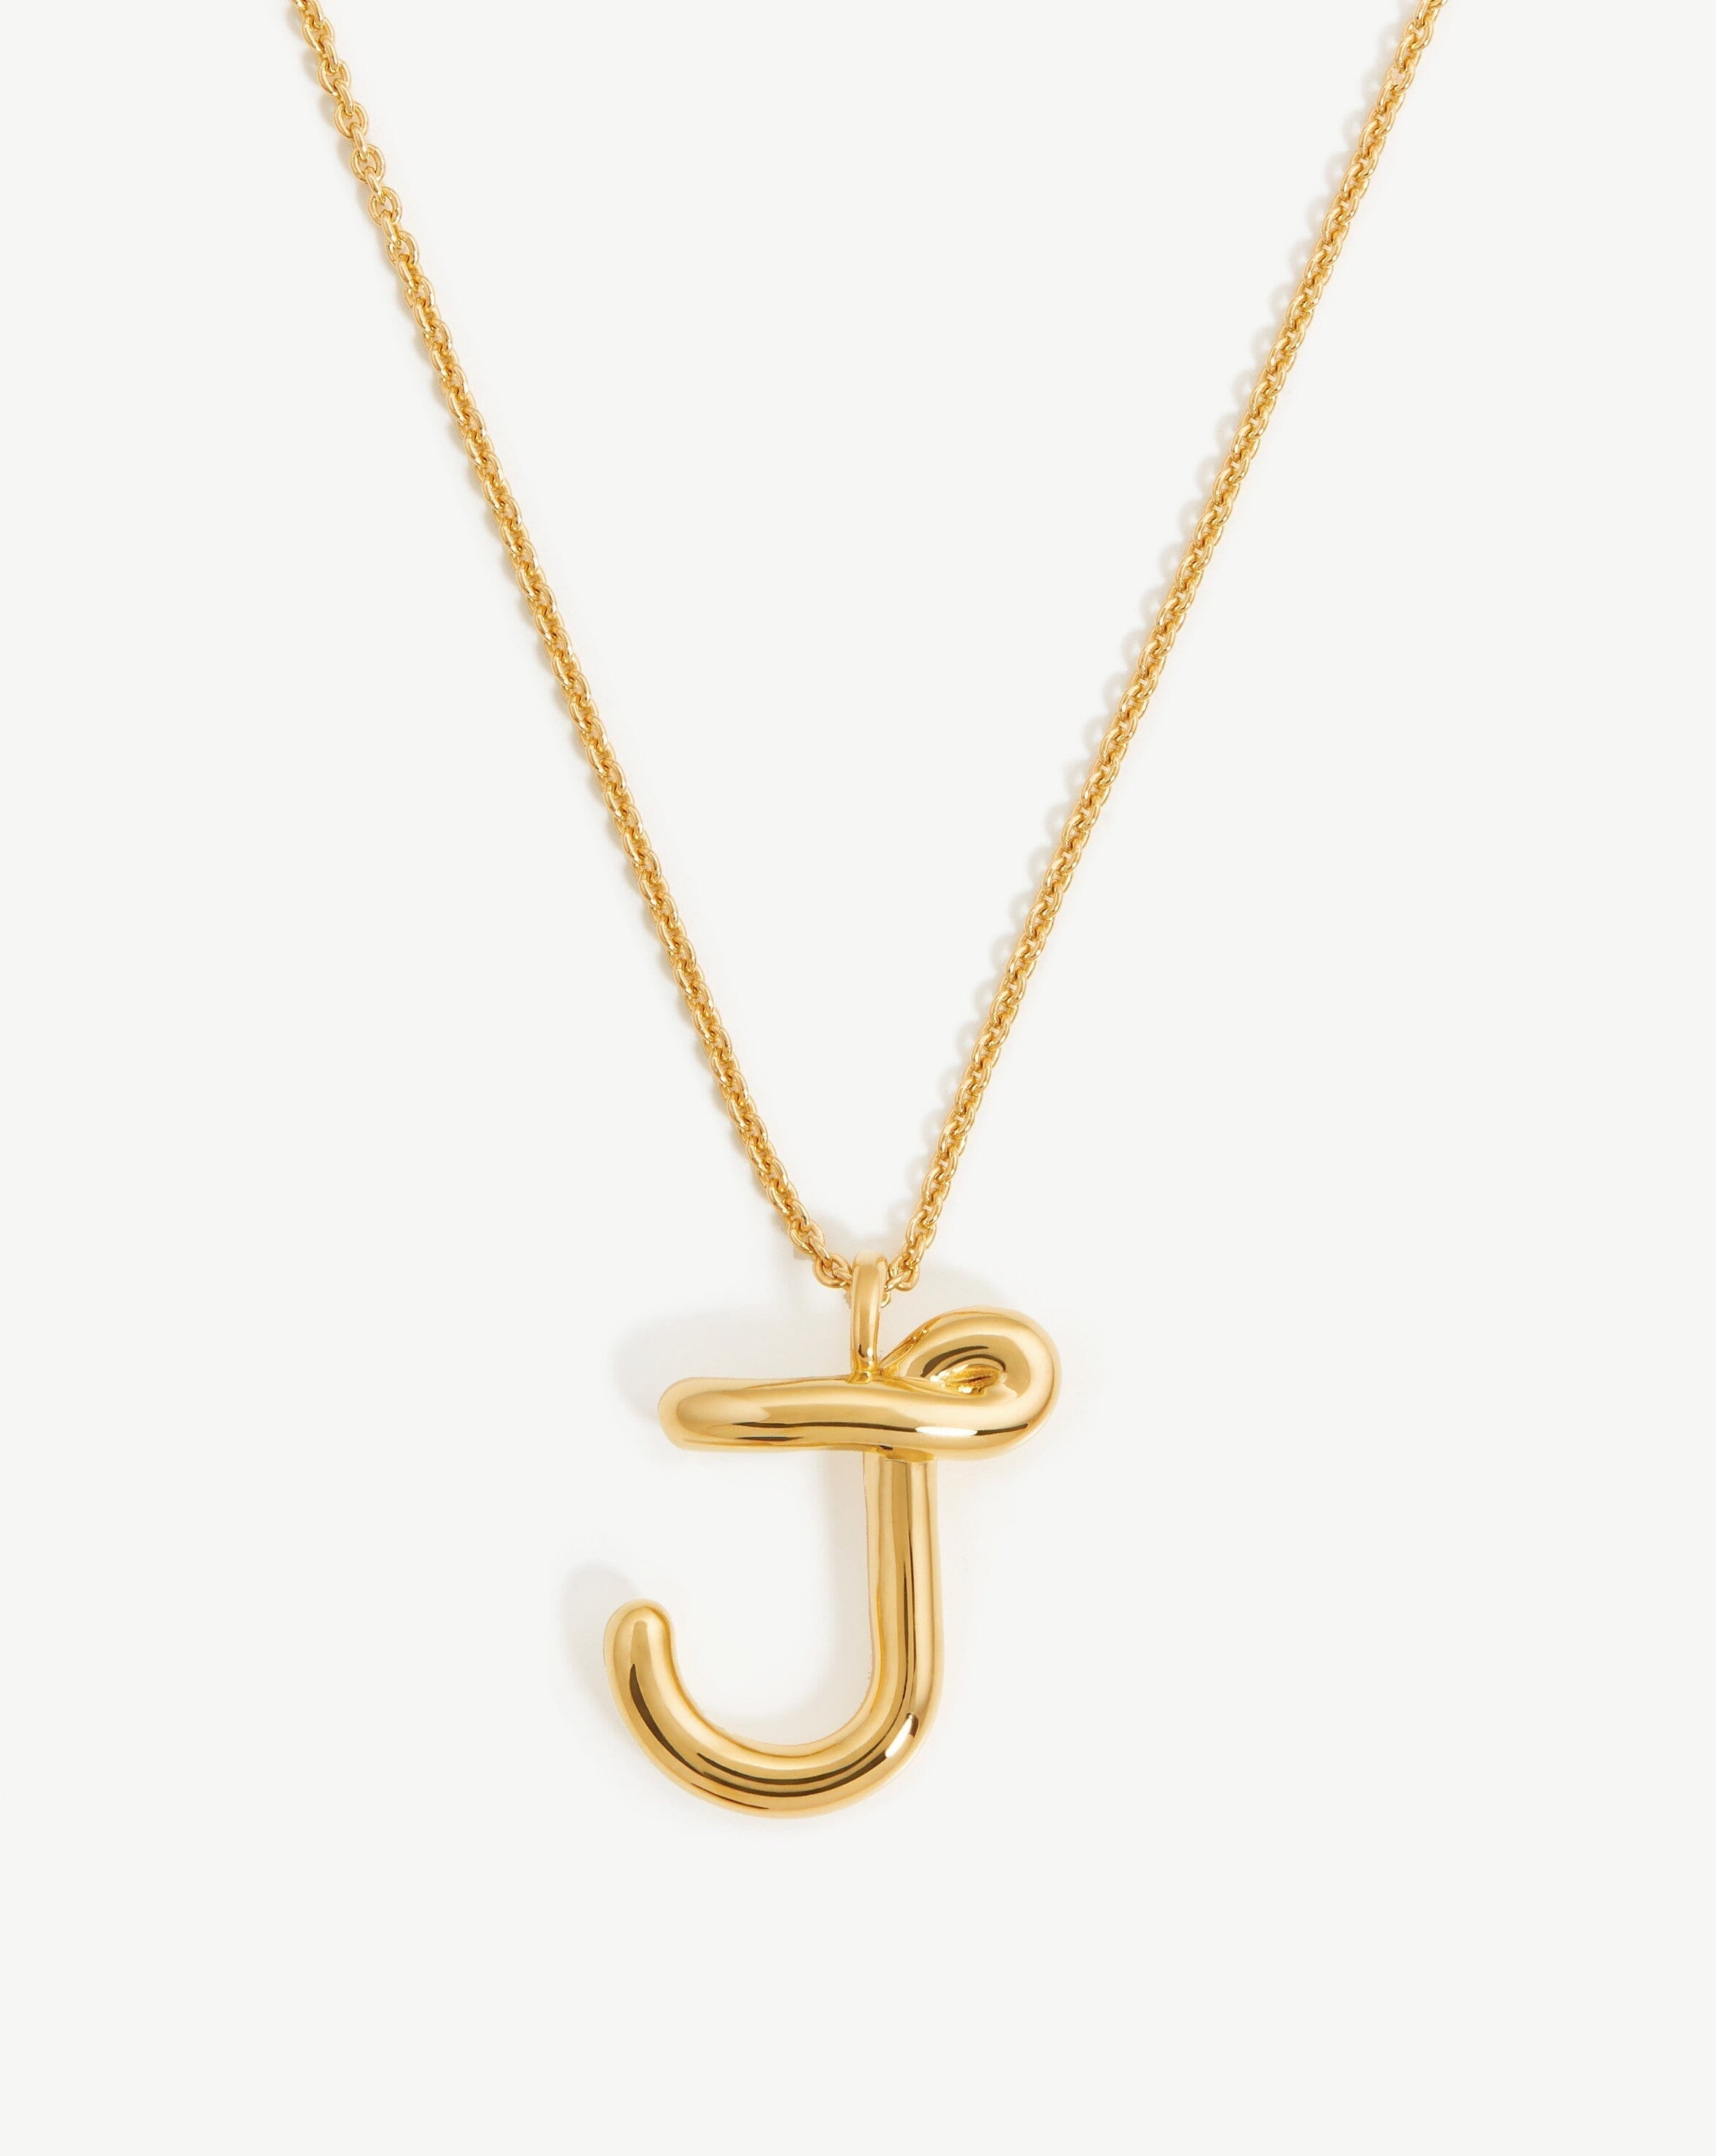 Letter V Pendant Necklace in Gold